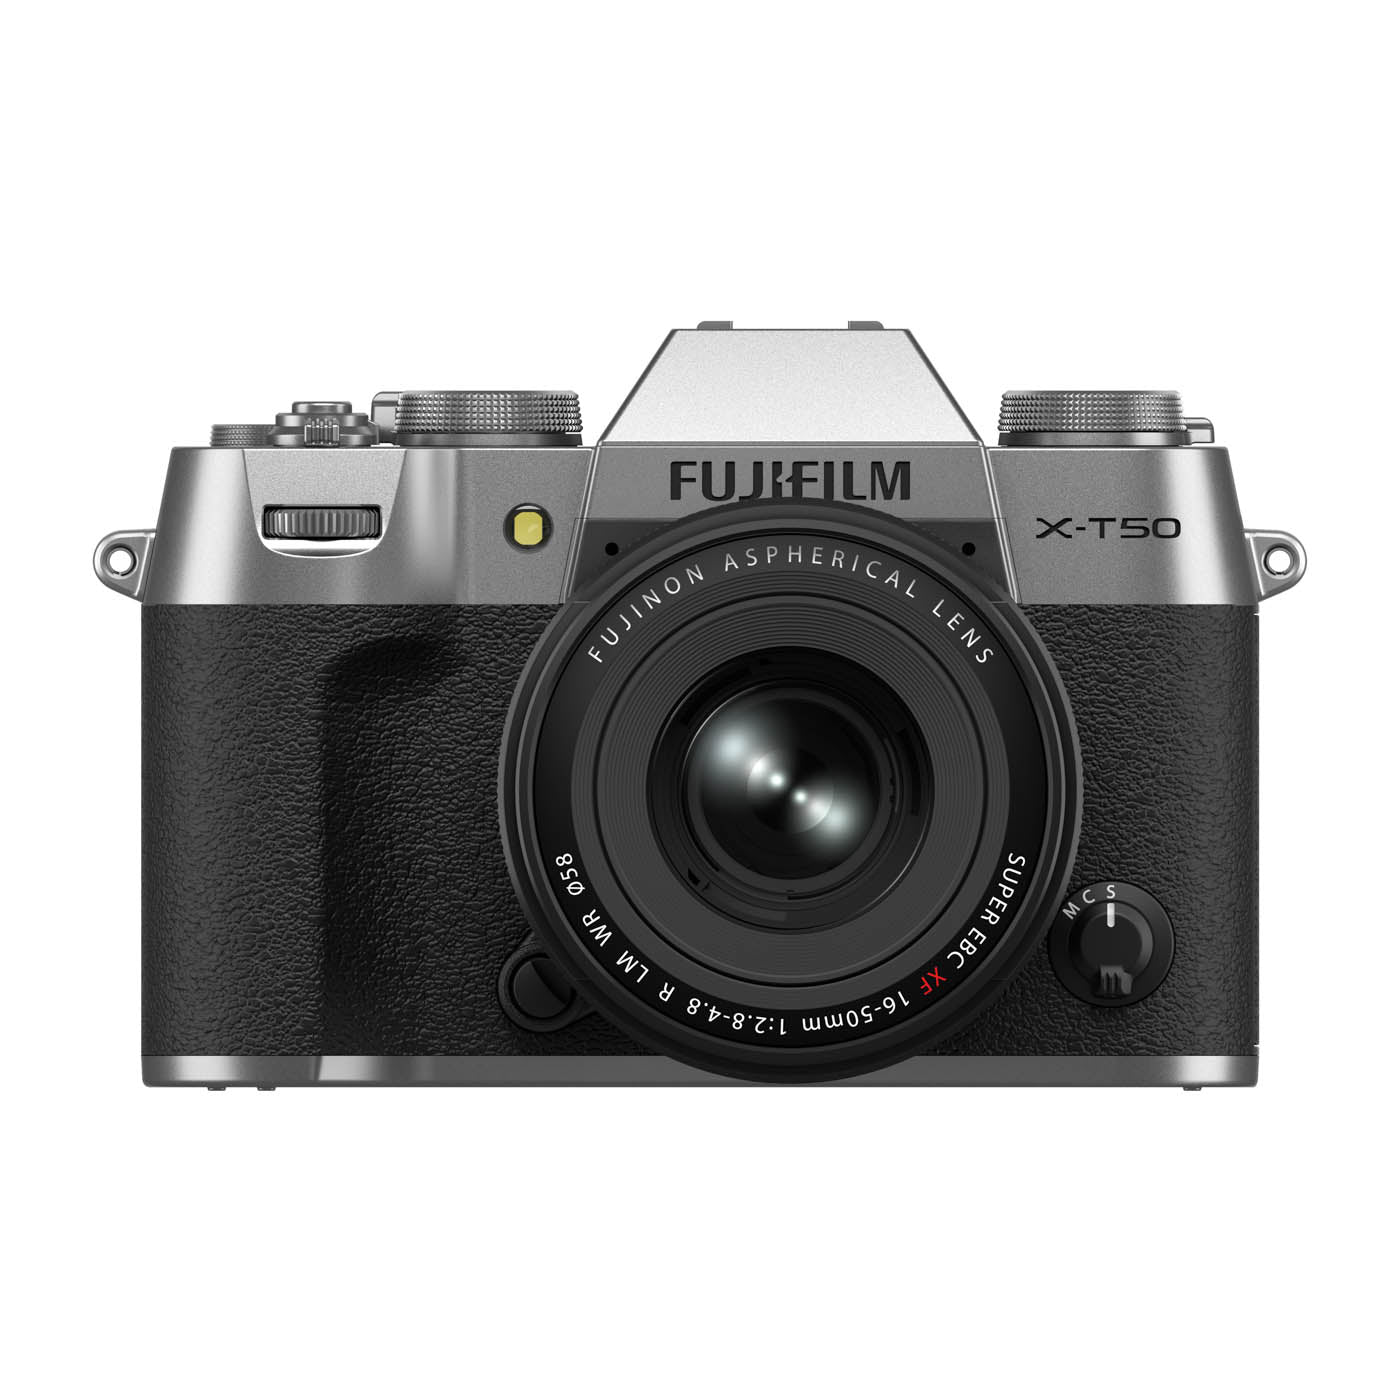 Fujifilm X-T50 Camera with XF 16-50mm F2.8-4.8 R LM WR Lens - Silver